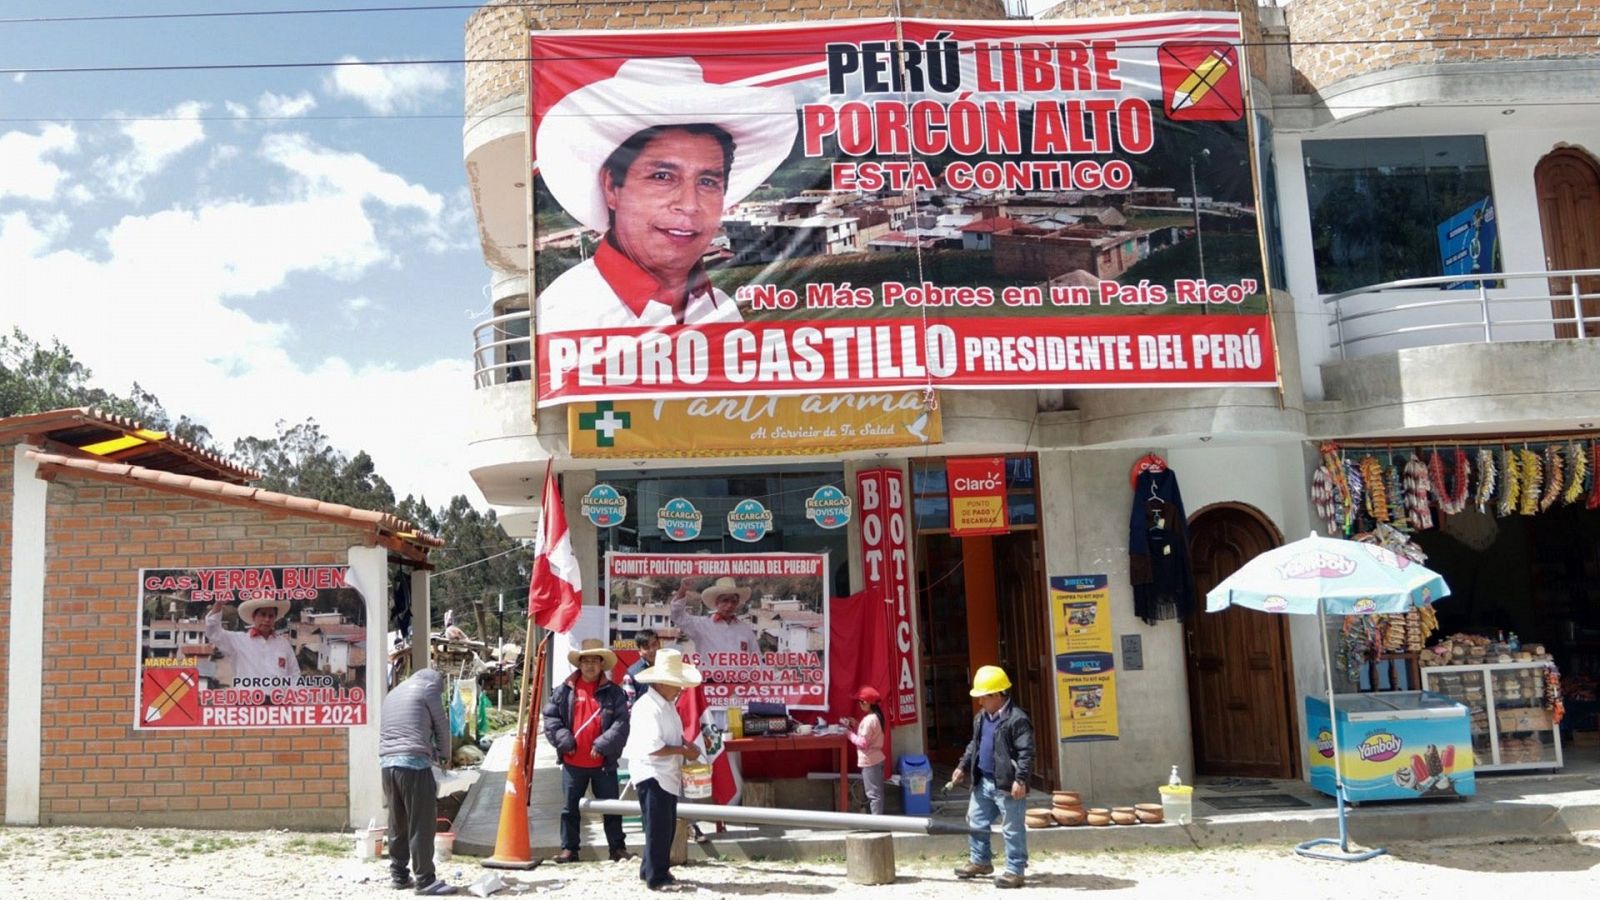 Perú | La igualdad entre los candidatos marca la jornada de reflexión